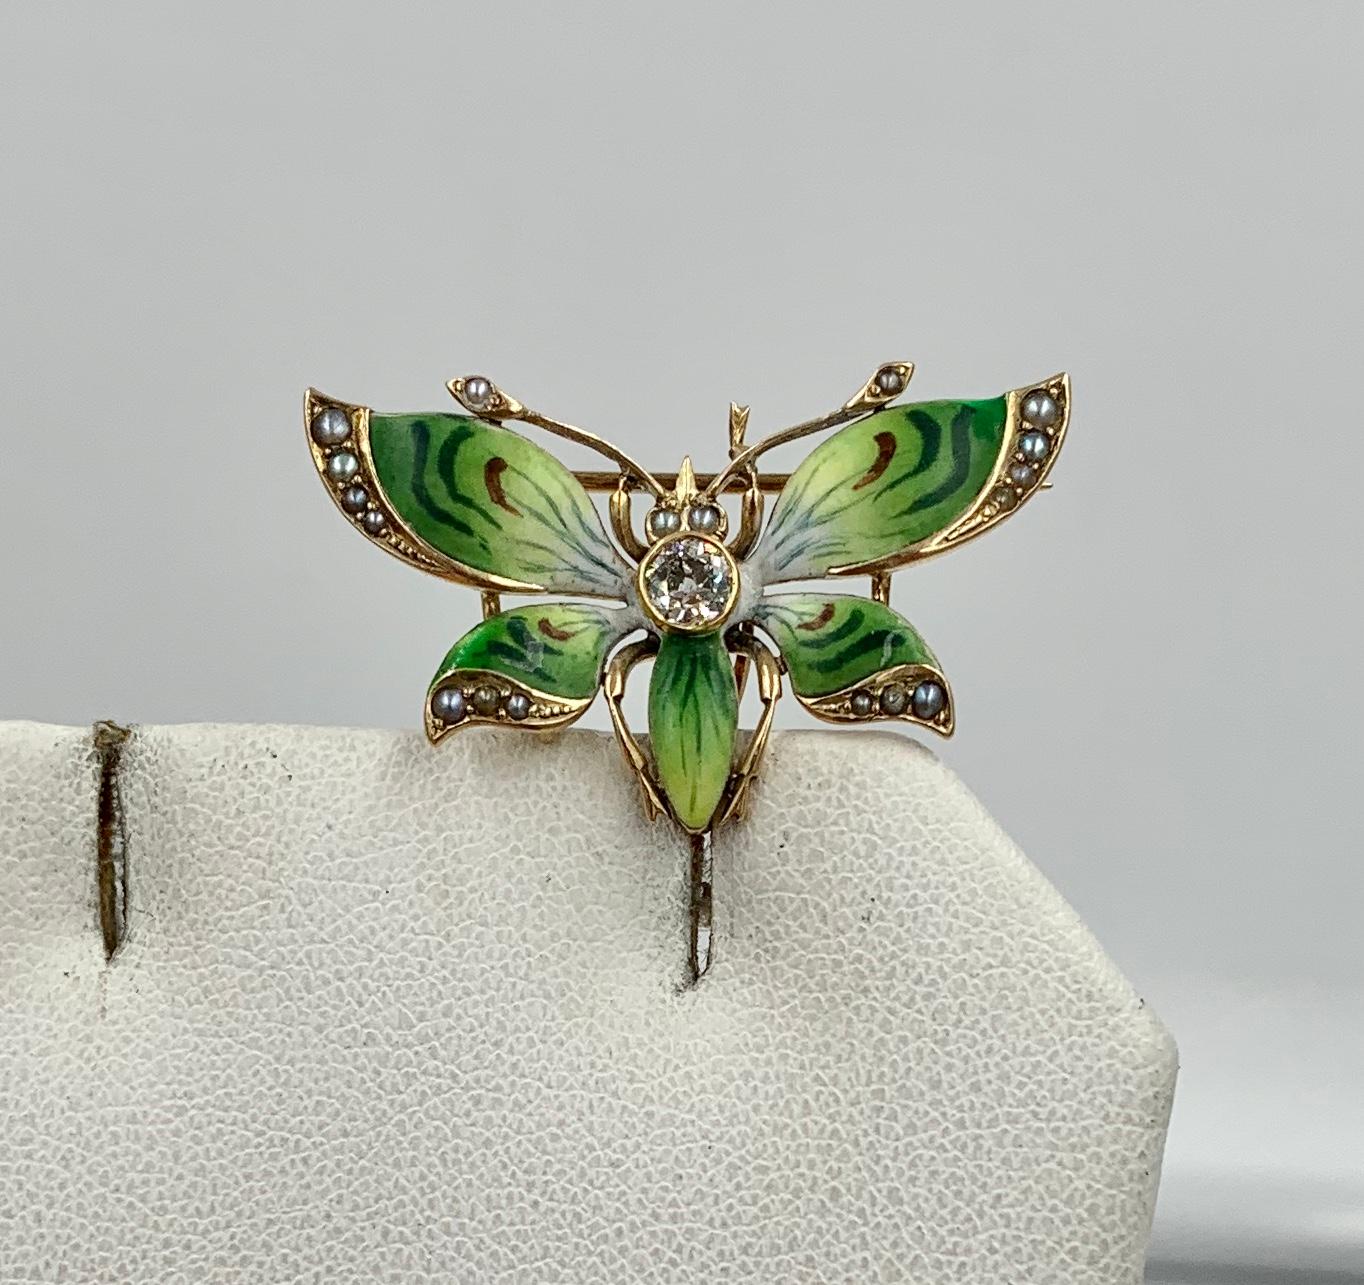 Magnifique et rare pendentif broche Art Nouveau en forme de papillon.  Le magnifique papillon est en or 14 carats. 
Il est serti d'un magnifique diamant central taillé à l'ancienne d'environ 0,20 carats.  Le diamant est tout simplement magnifique - 